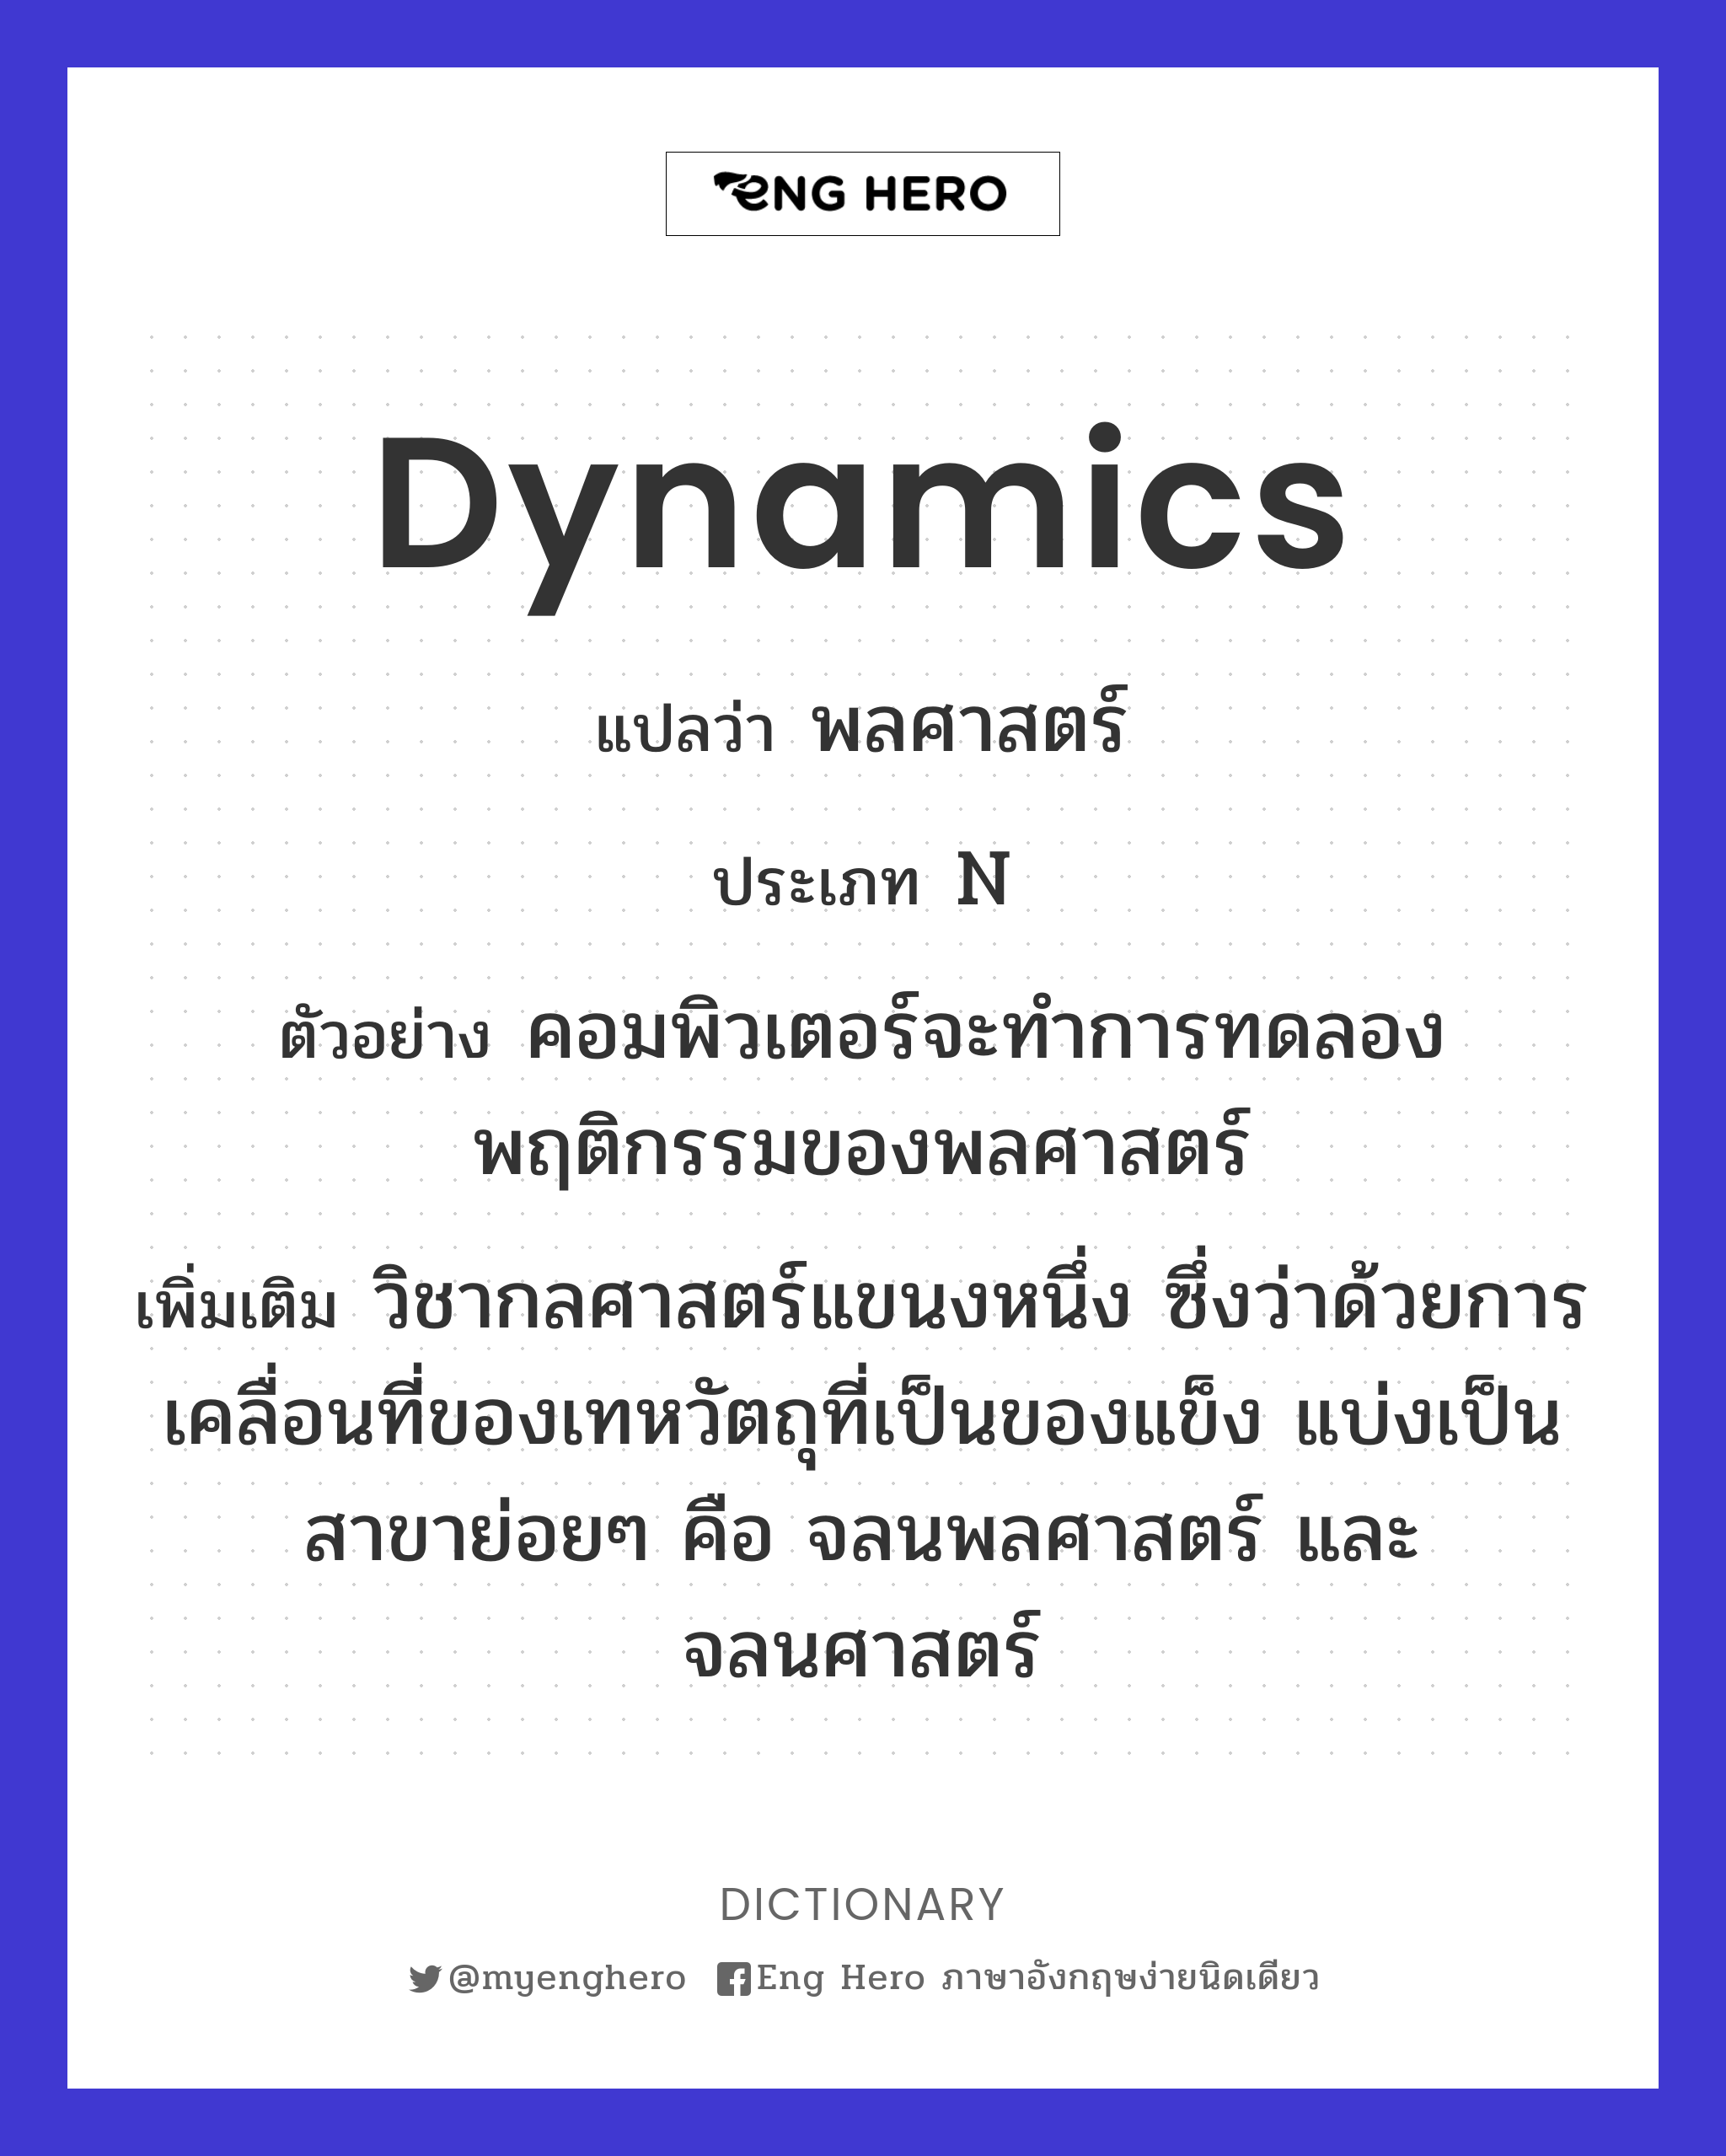 dynamics